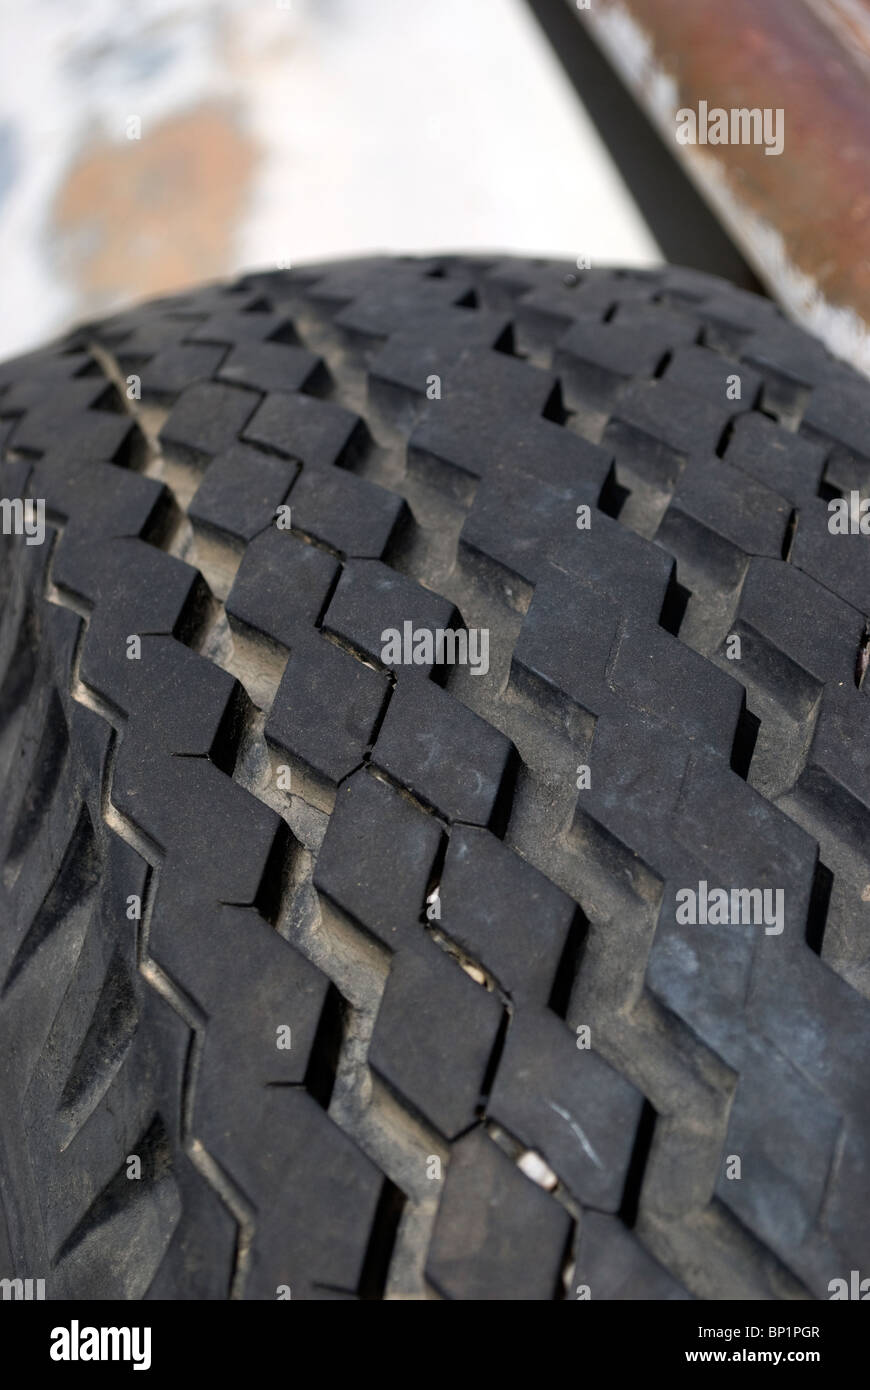 Abgenutzte und detaillierte Laufflächenprofile aus einem LKW-Reifen mit  eingelegte Steinen in den Reifen Nuten Stockfotografie - Alamy